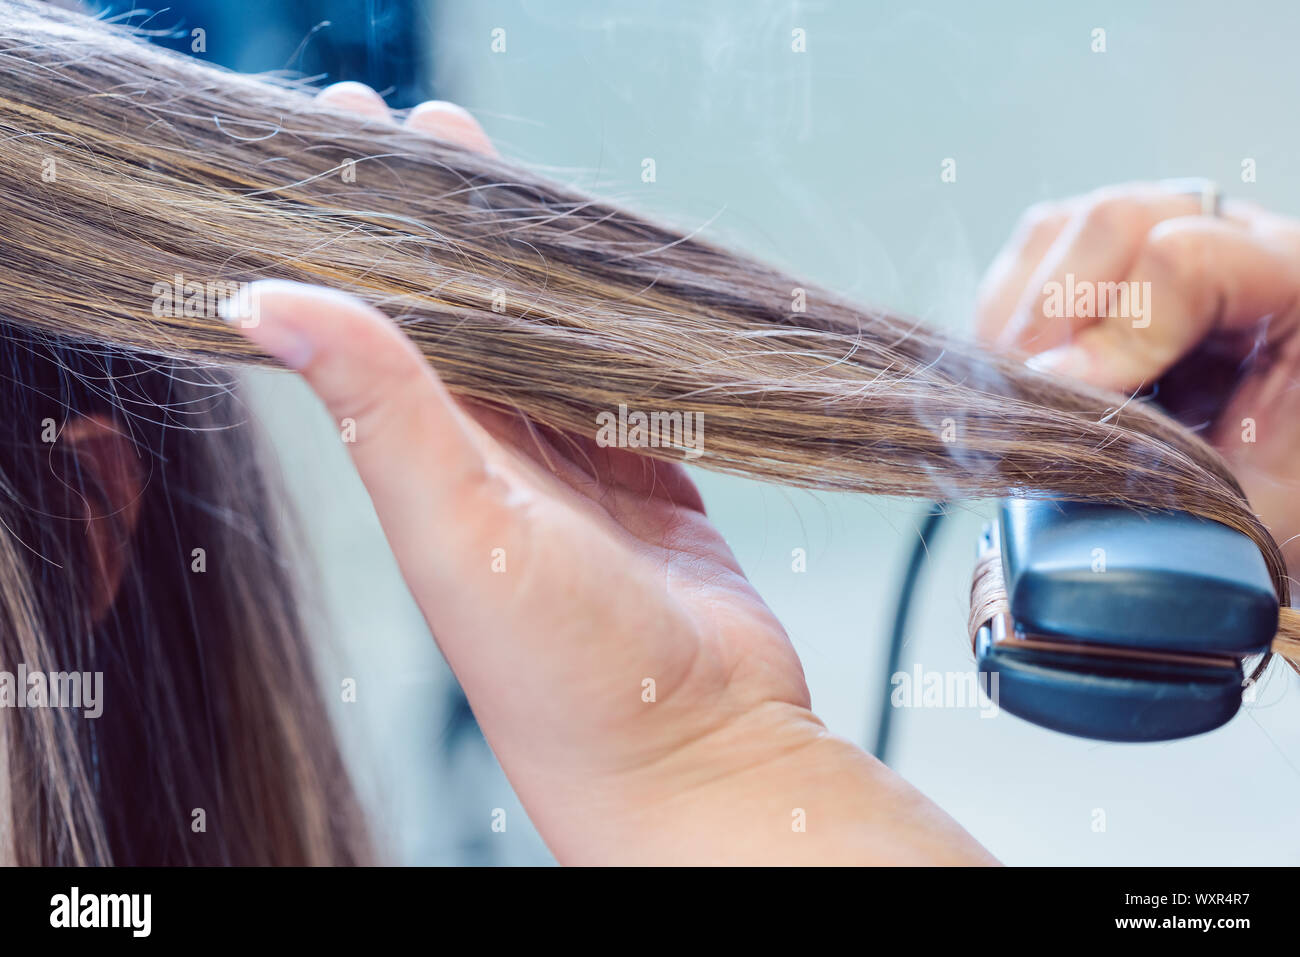 Friseur mit Bügeleisen auf das Haar der Frau Kunde, closeup Schuß Stockfoto